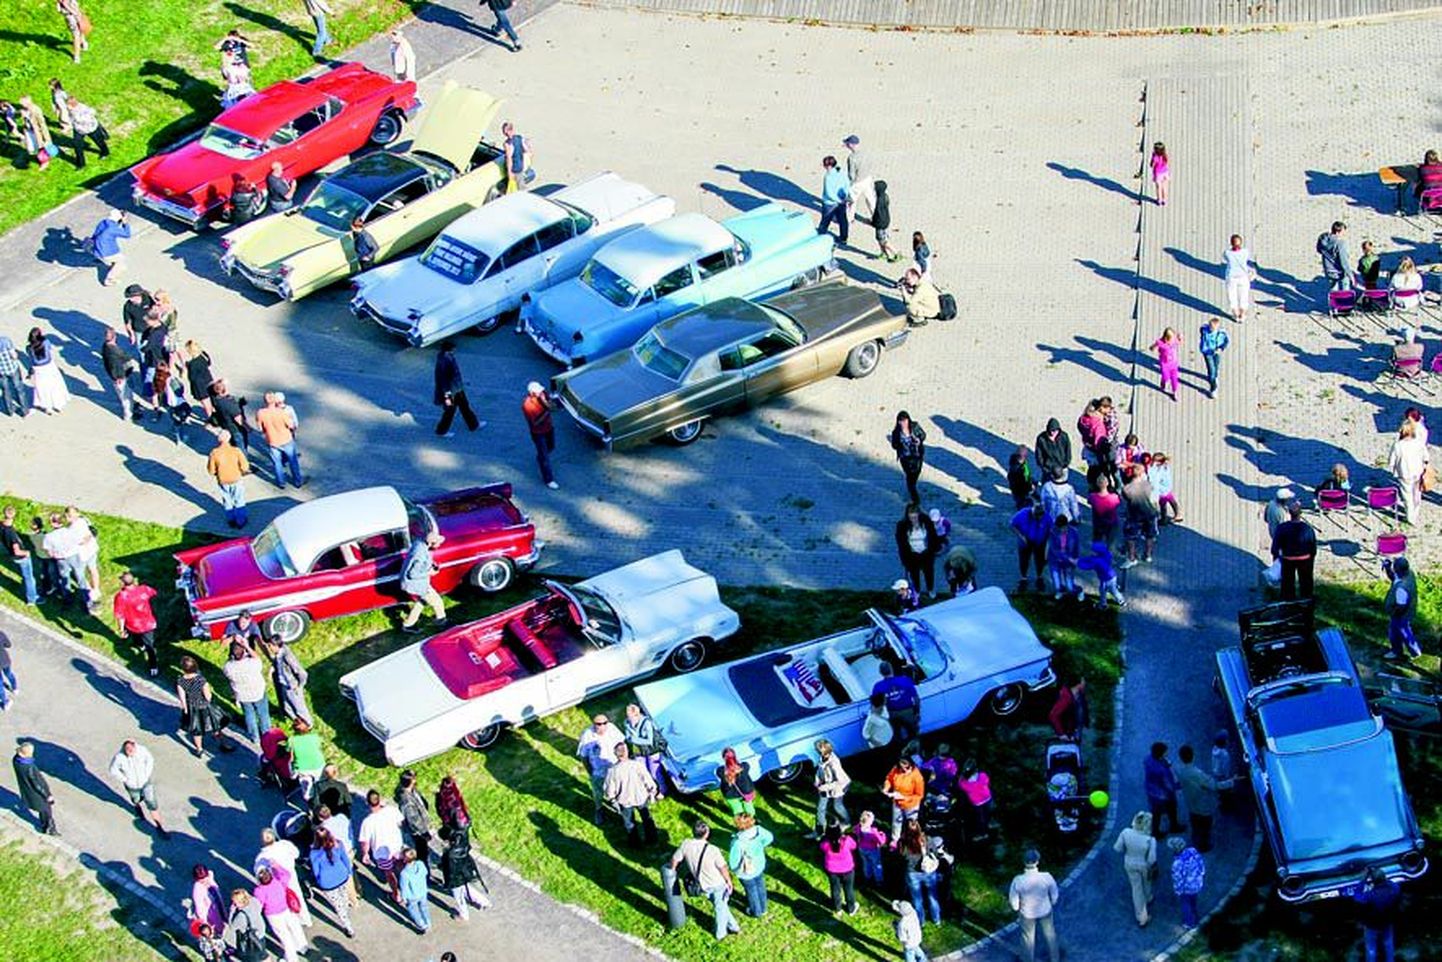 Eelmisel aastal oli Paide Vallimäel Ameerika autode näitus. Järgmisel nädalal näeb jälle Paides uhkeid masinaid, kui siia jõuab vanasõidukite võidusõit.